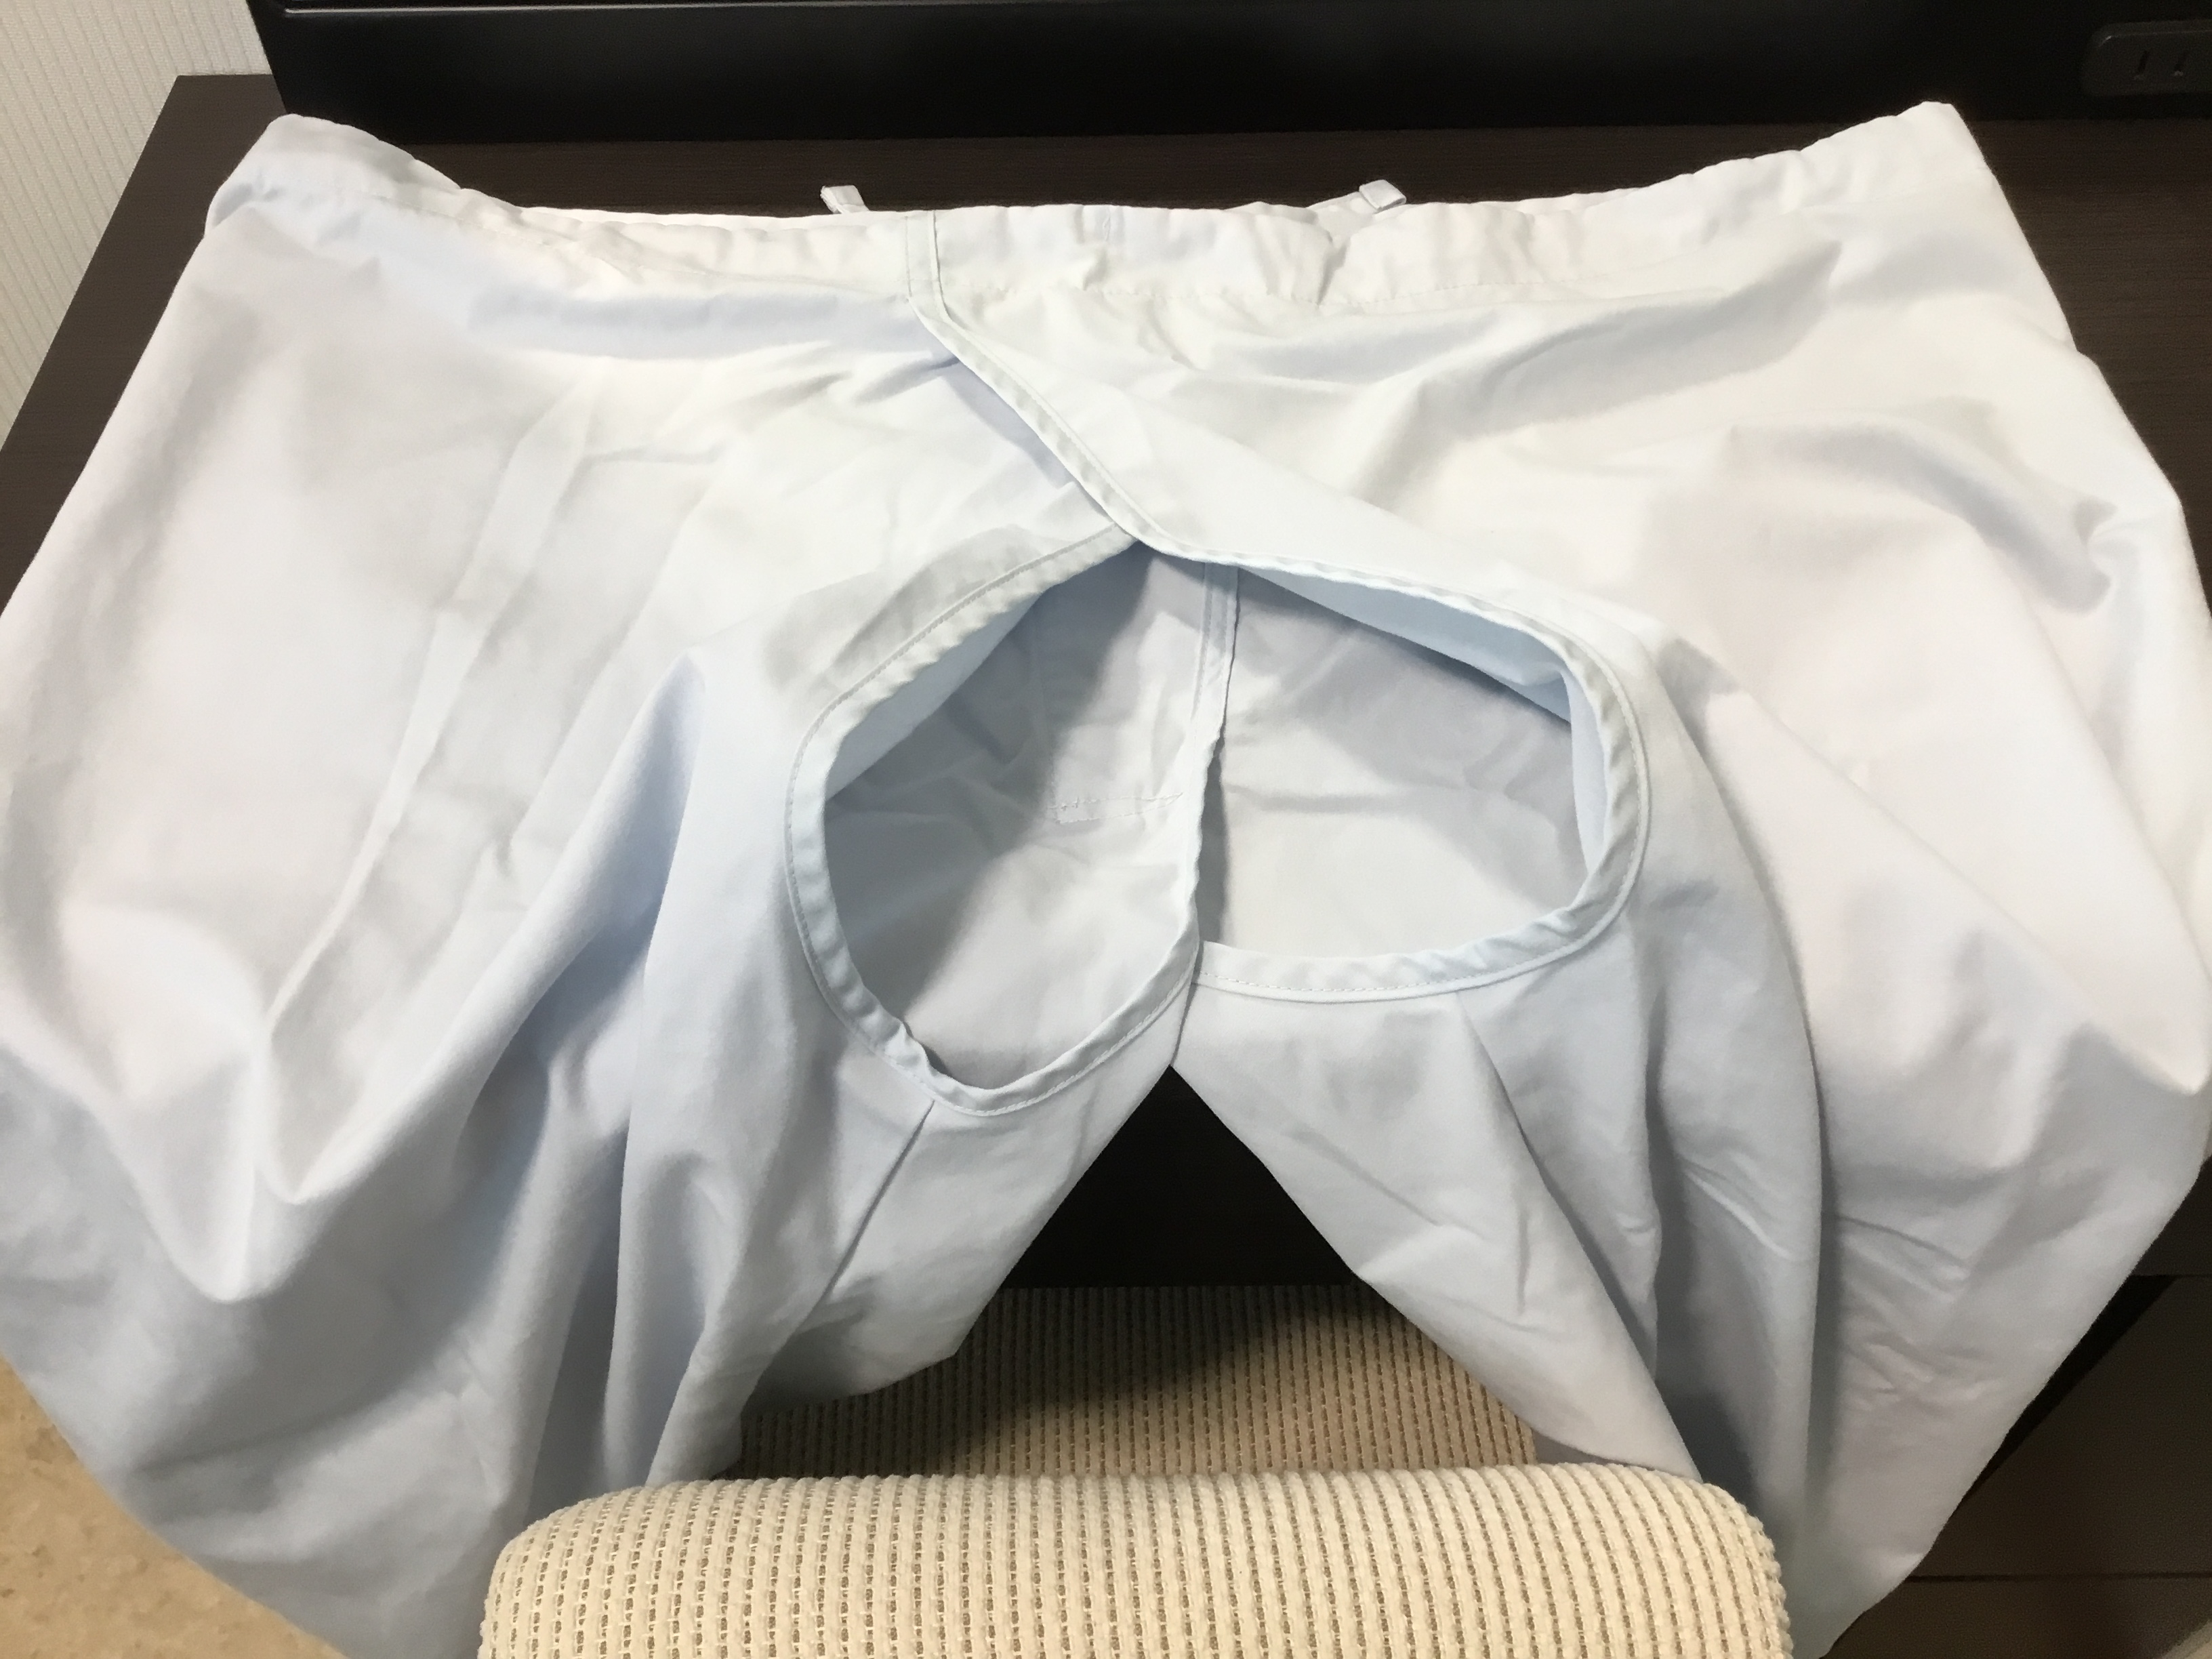 大腸内視鏡検査の検査服のズボン。おしりの部分に穴が開いている。